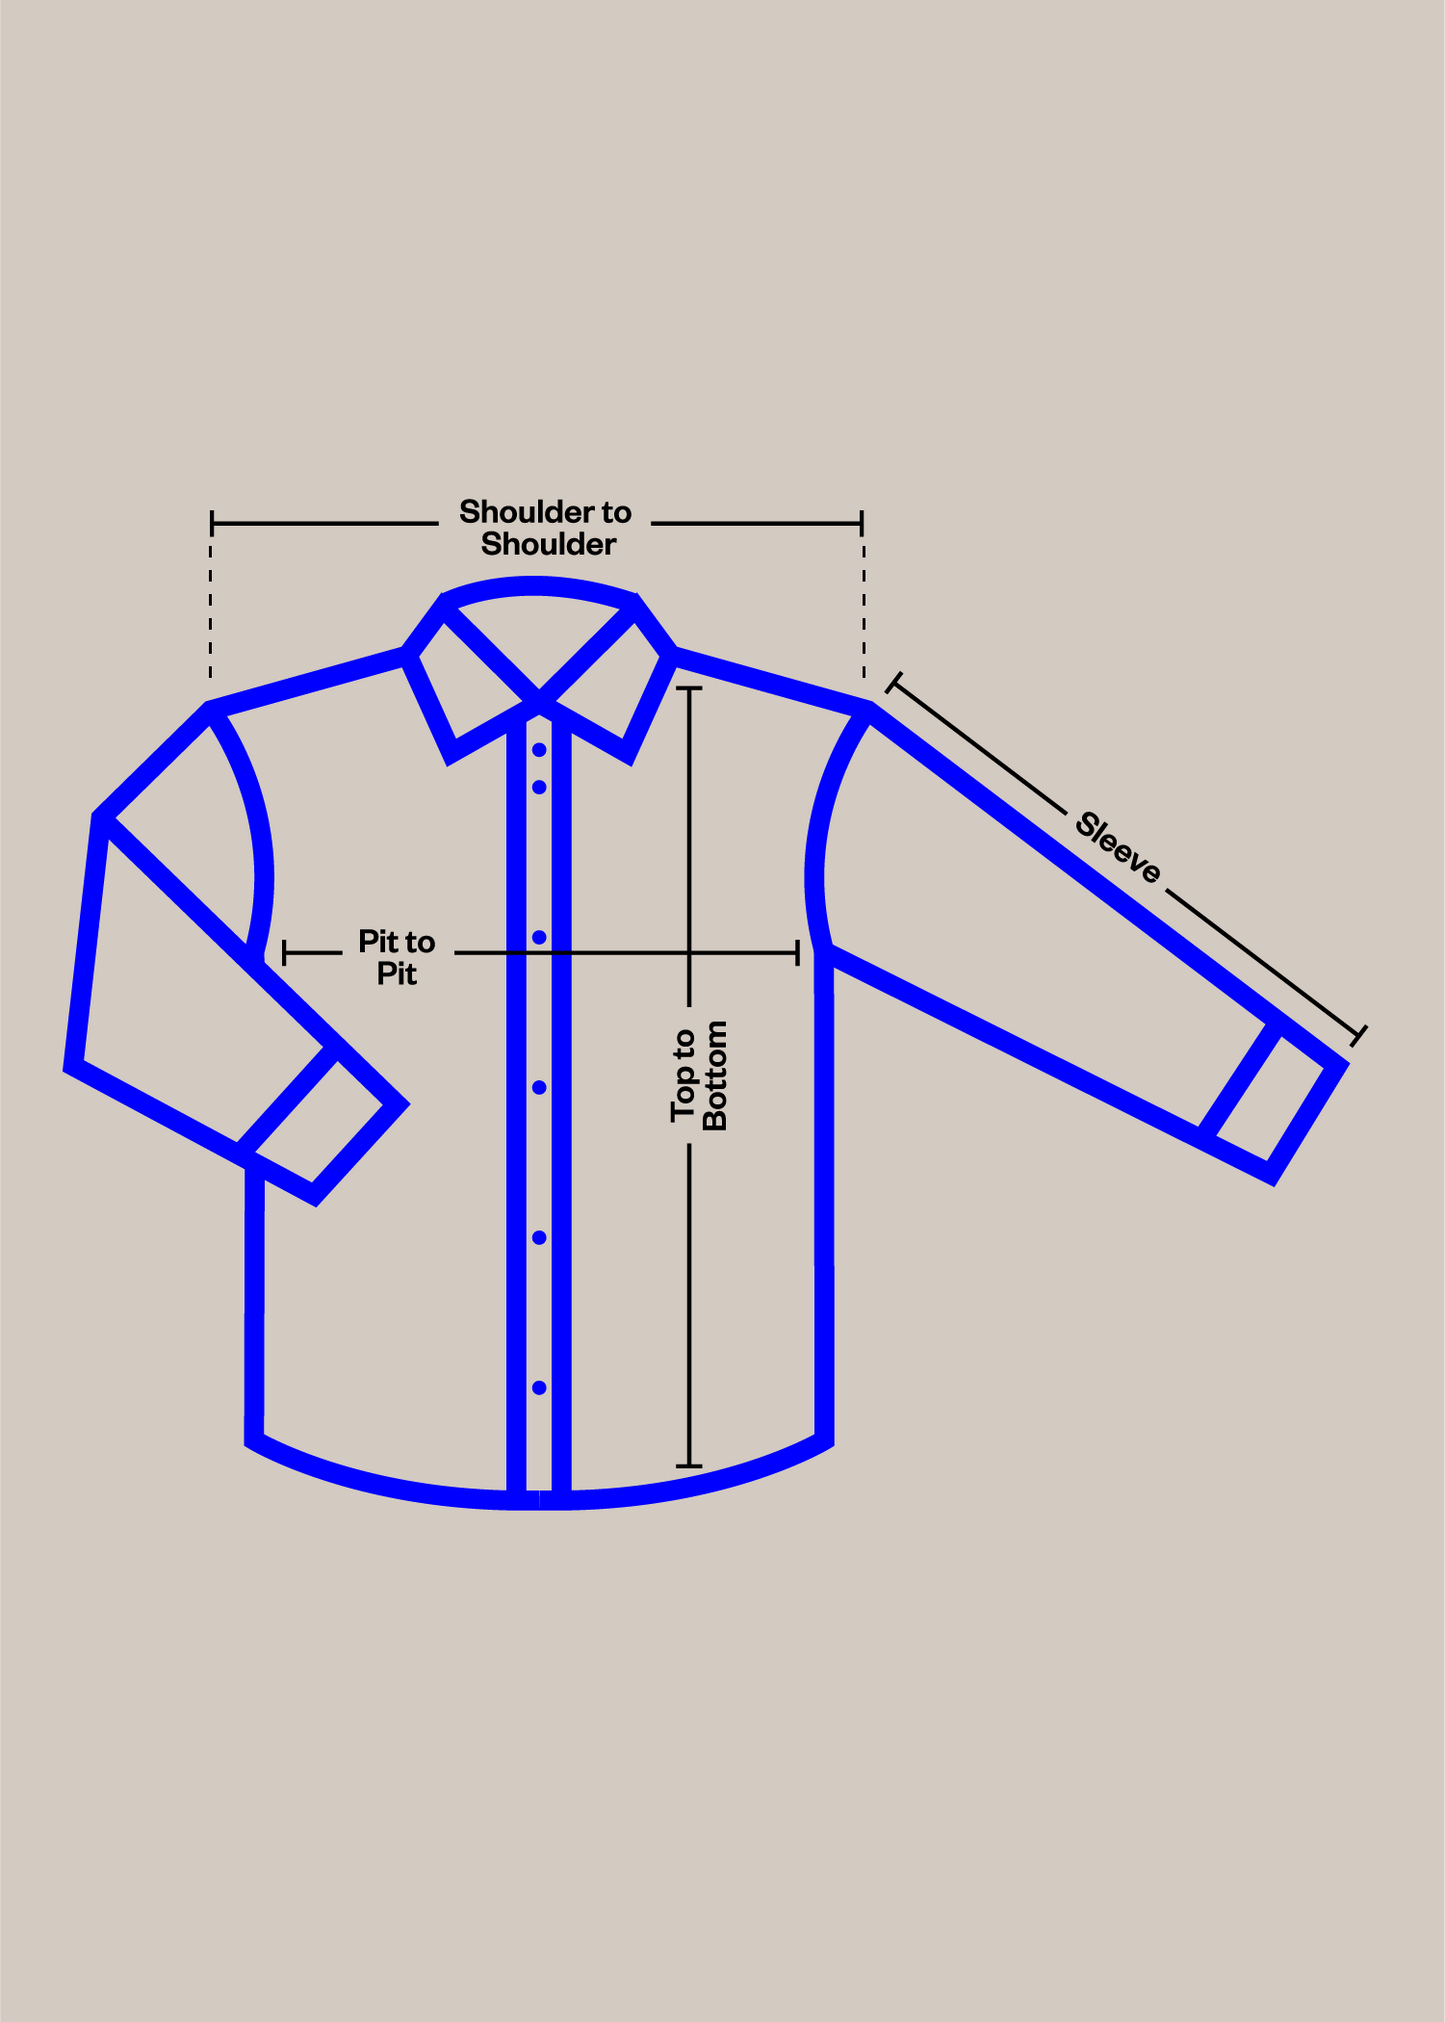 1980s Bleu de Travail French Workwear Chore Jacket Size XL/2XL